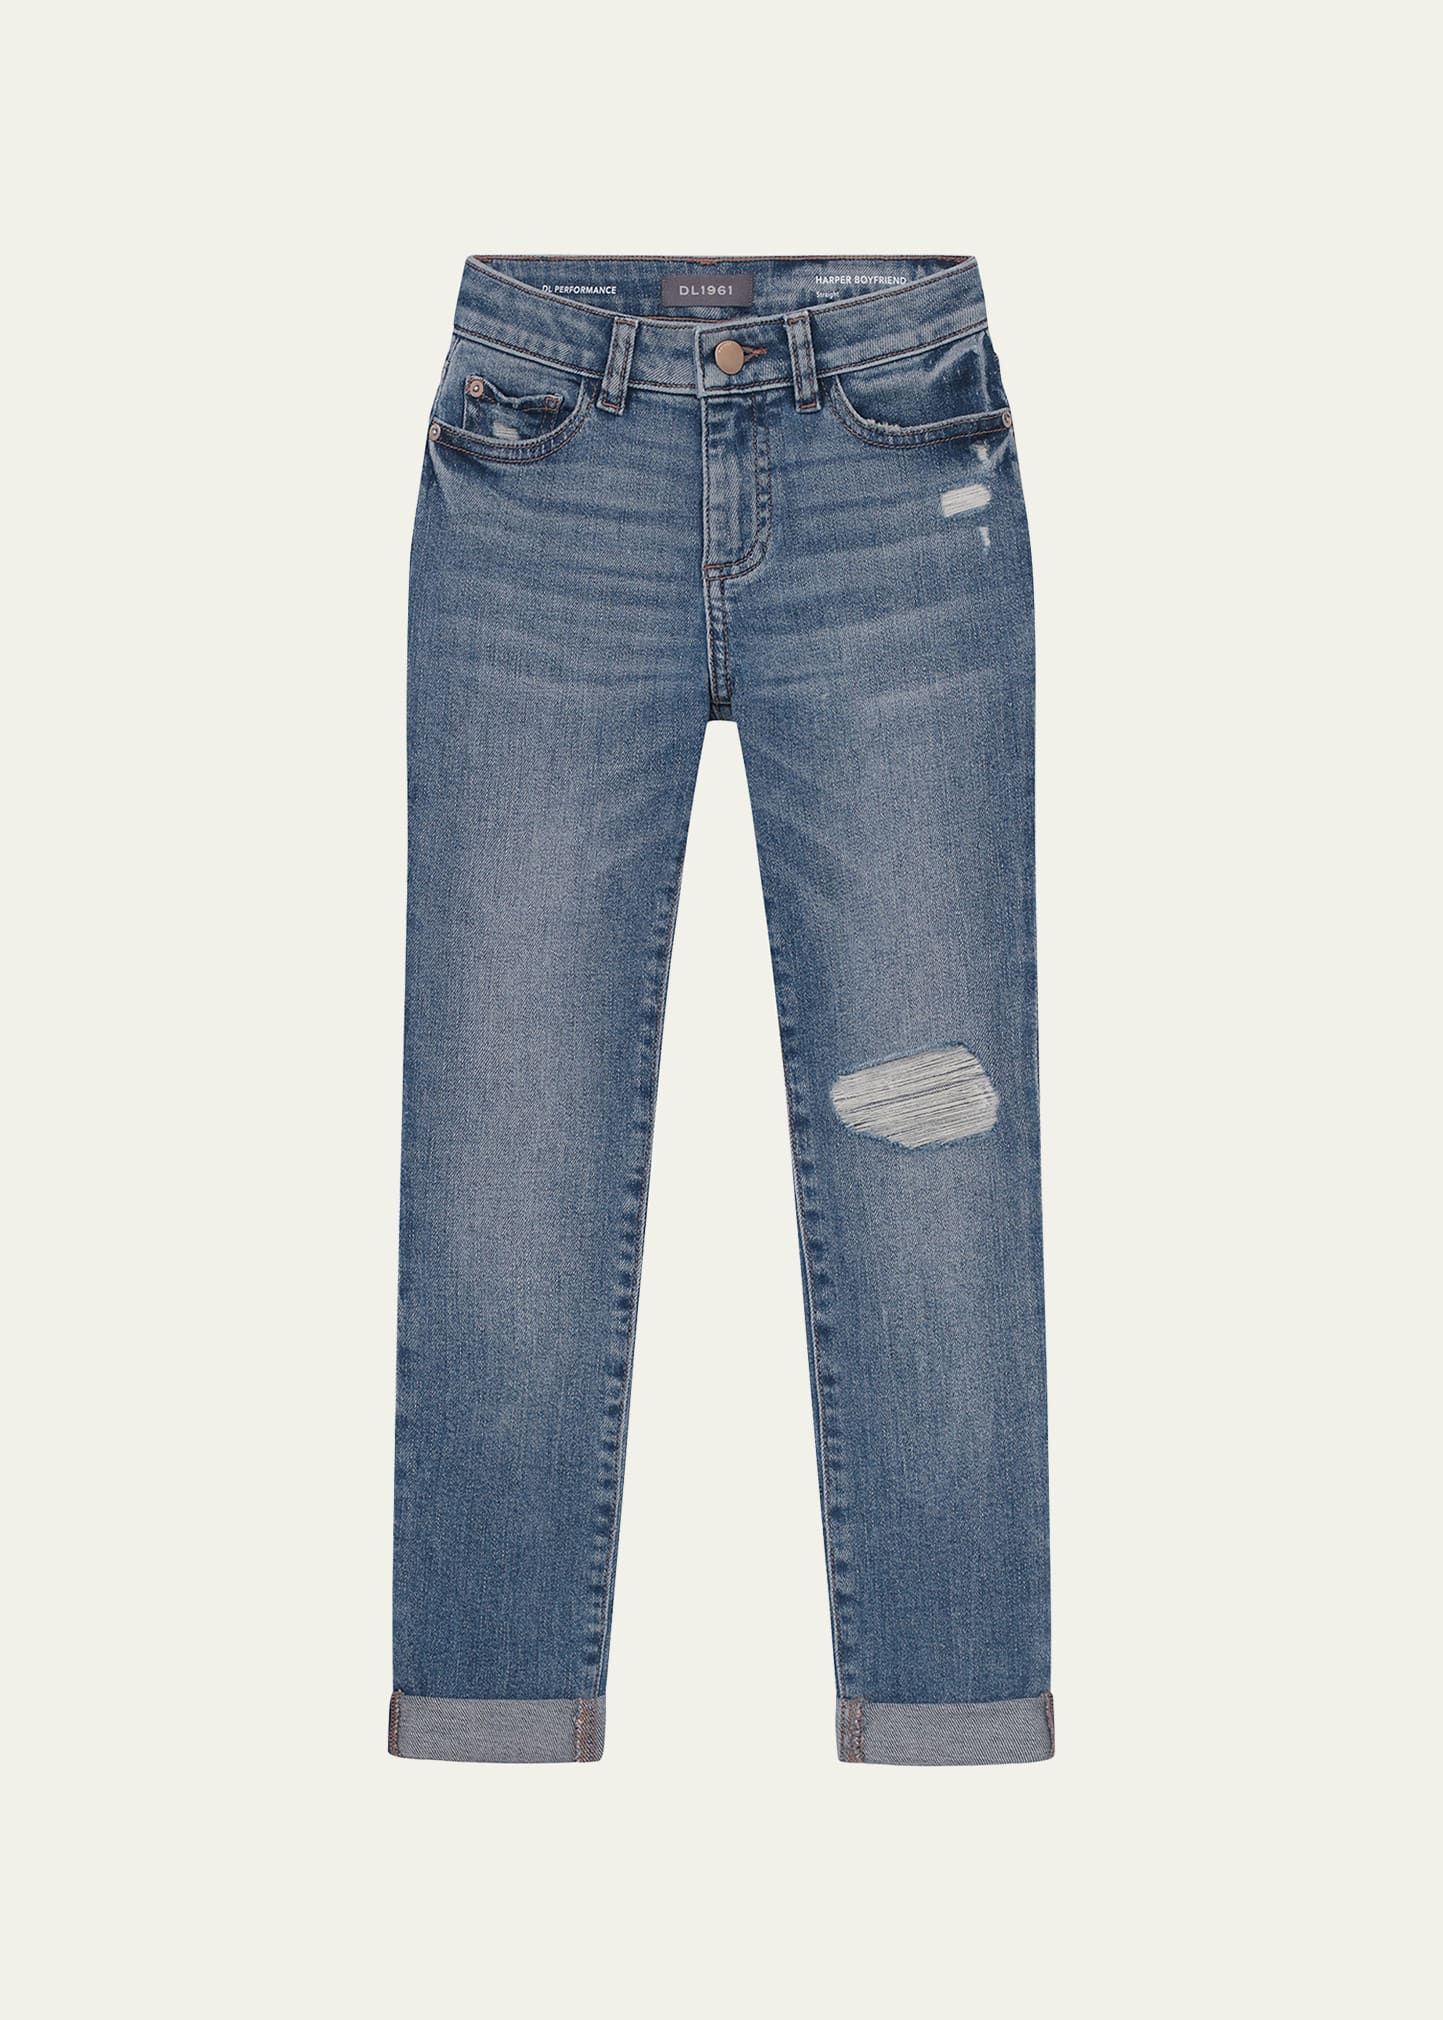 DL Premium Denim Girl's Harper Boyfriend Style Jeans, Size 2-6X